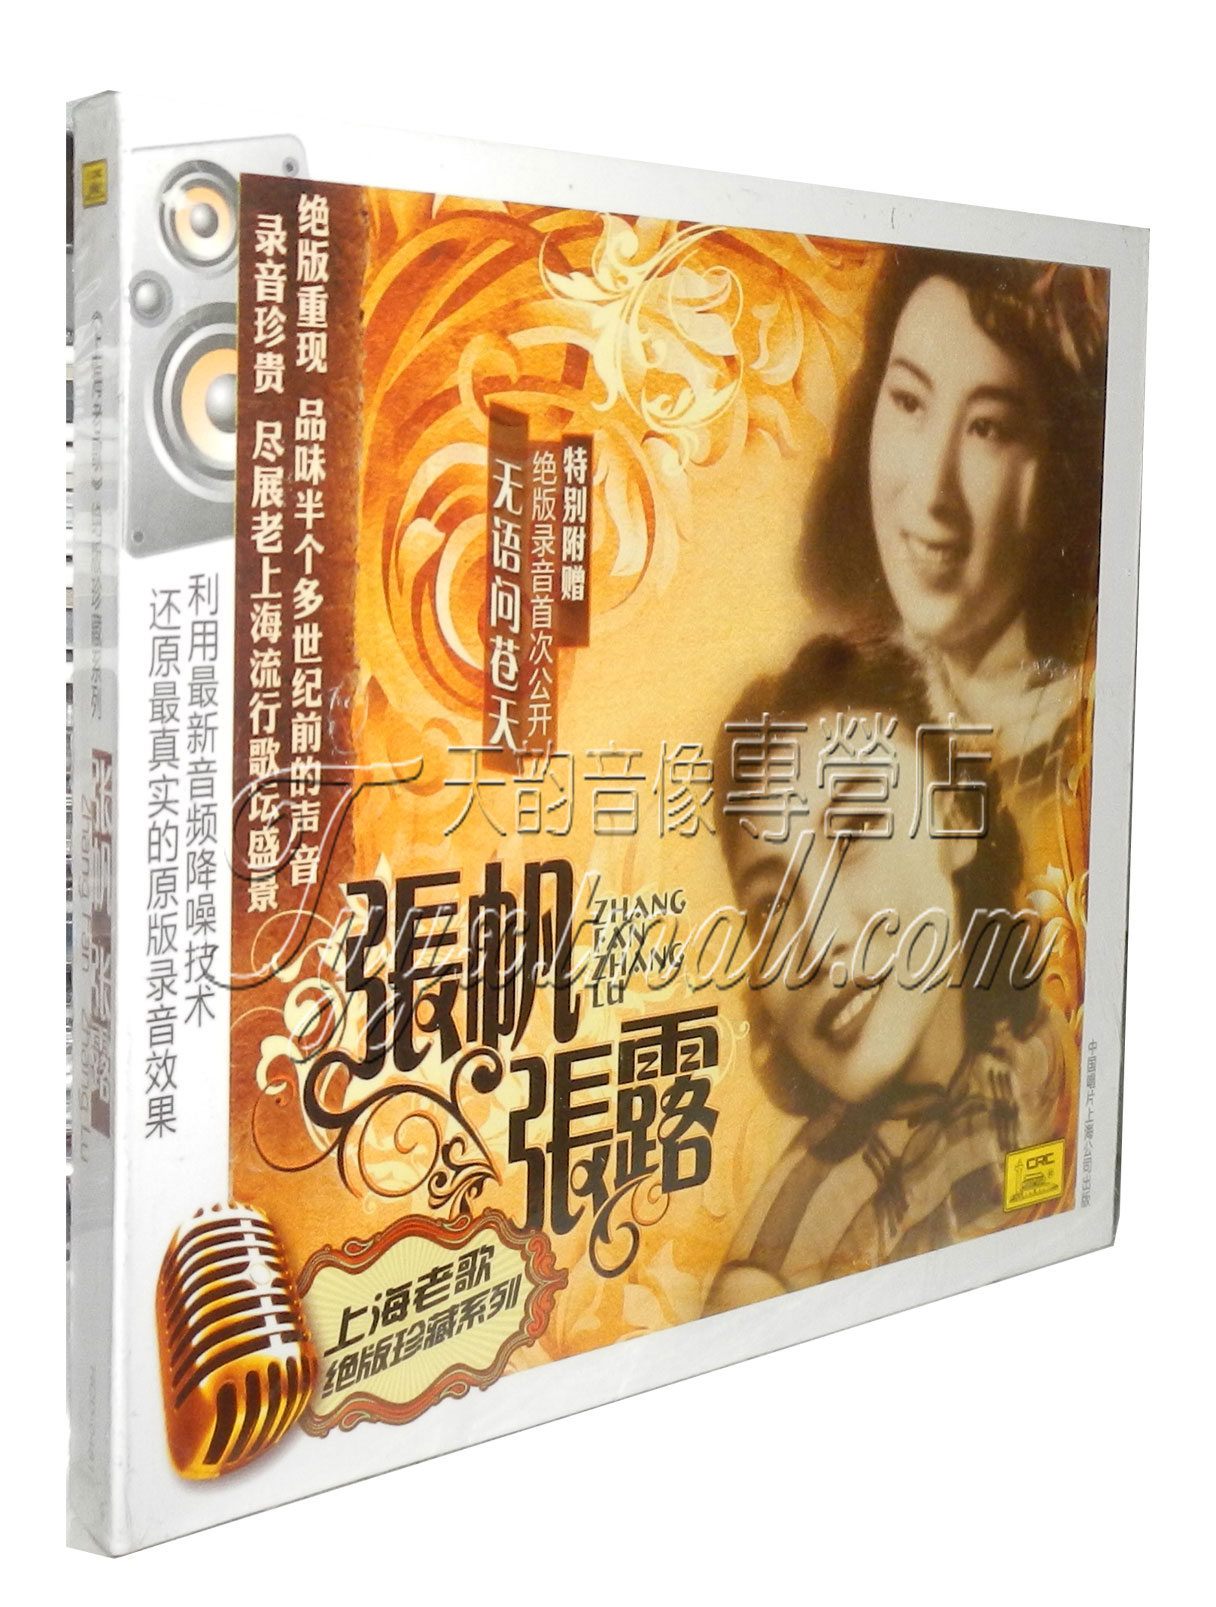 中国唱片 上海老歌珍藏系列 张帆 张露 无语问苍天 1CD 正版